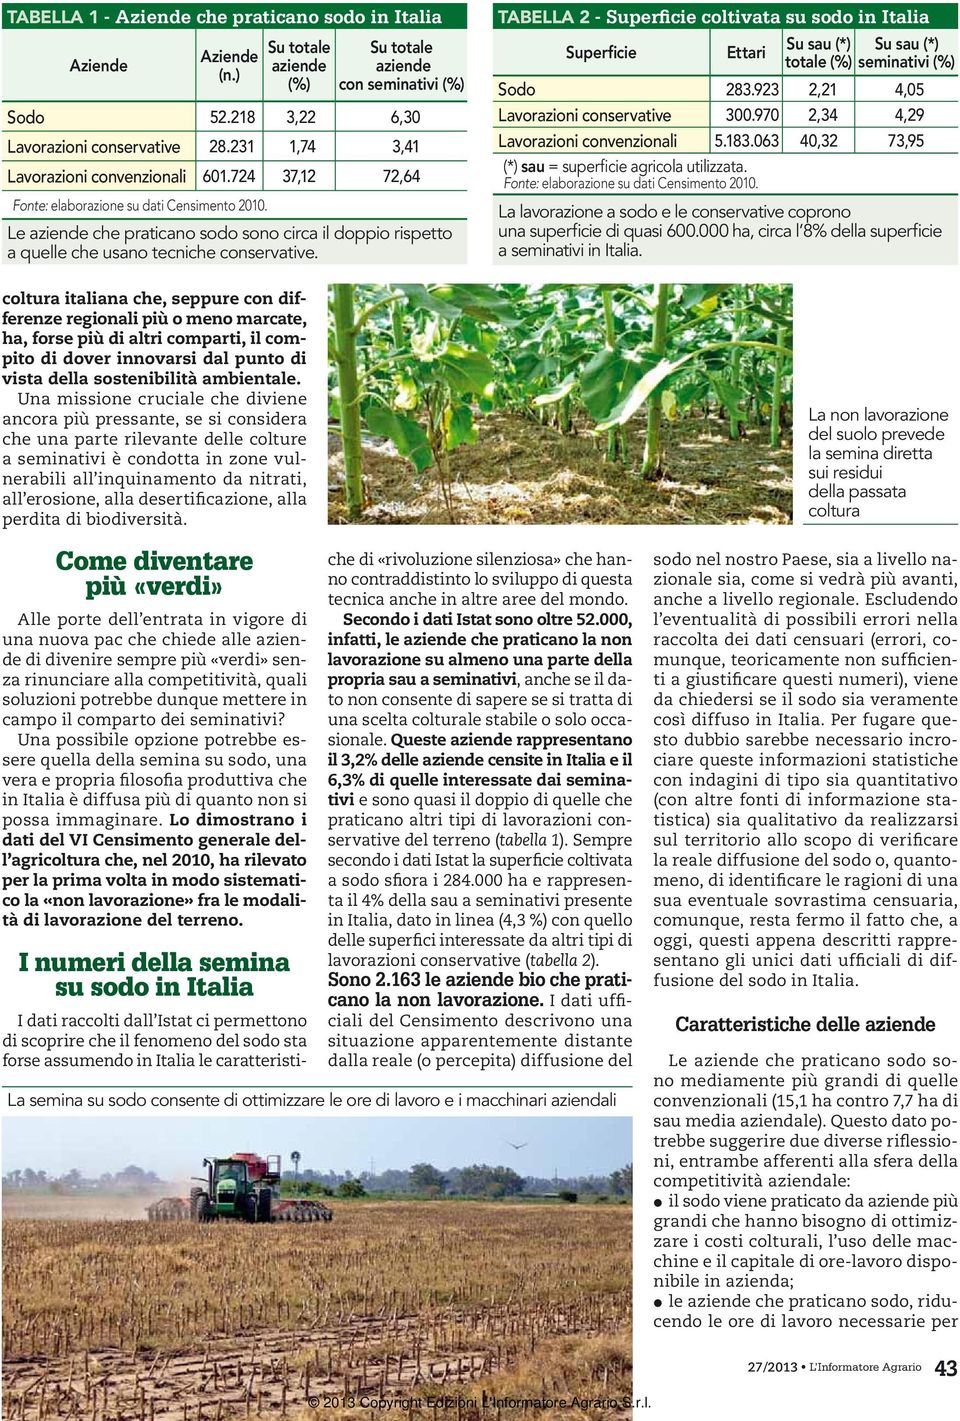 TABELLA 2 - Superficie coltivata su sodo in Italia Superficie Ettari Su sau (*) Su sau (*) totale (%) seminativi (%) Sodo 283.923 2,21 4,05 Lavorazioni conservative 300.